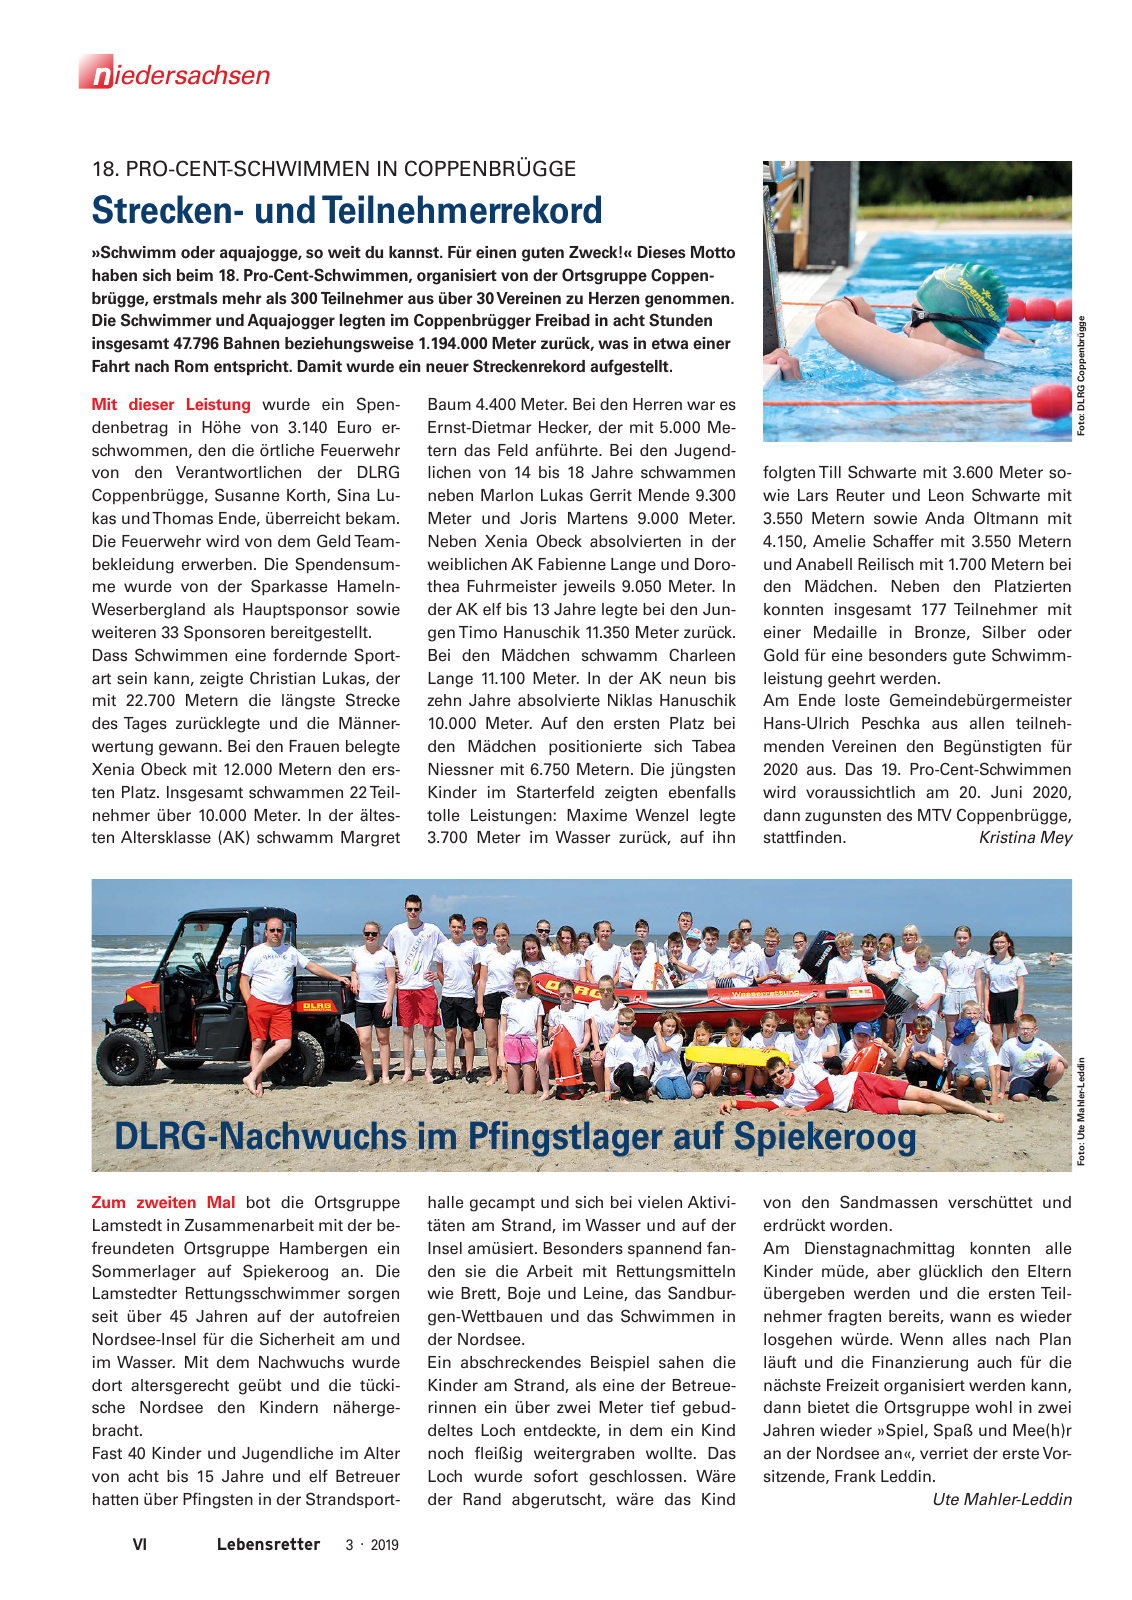 Vorschau Lebensretter 3/2019 - Niedersachsen Regionalausgabe Seite 8